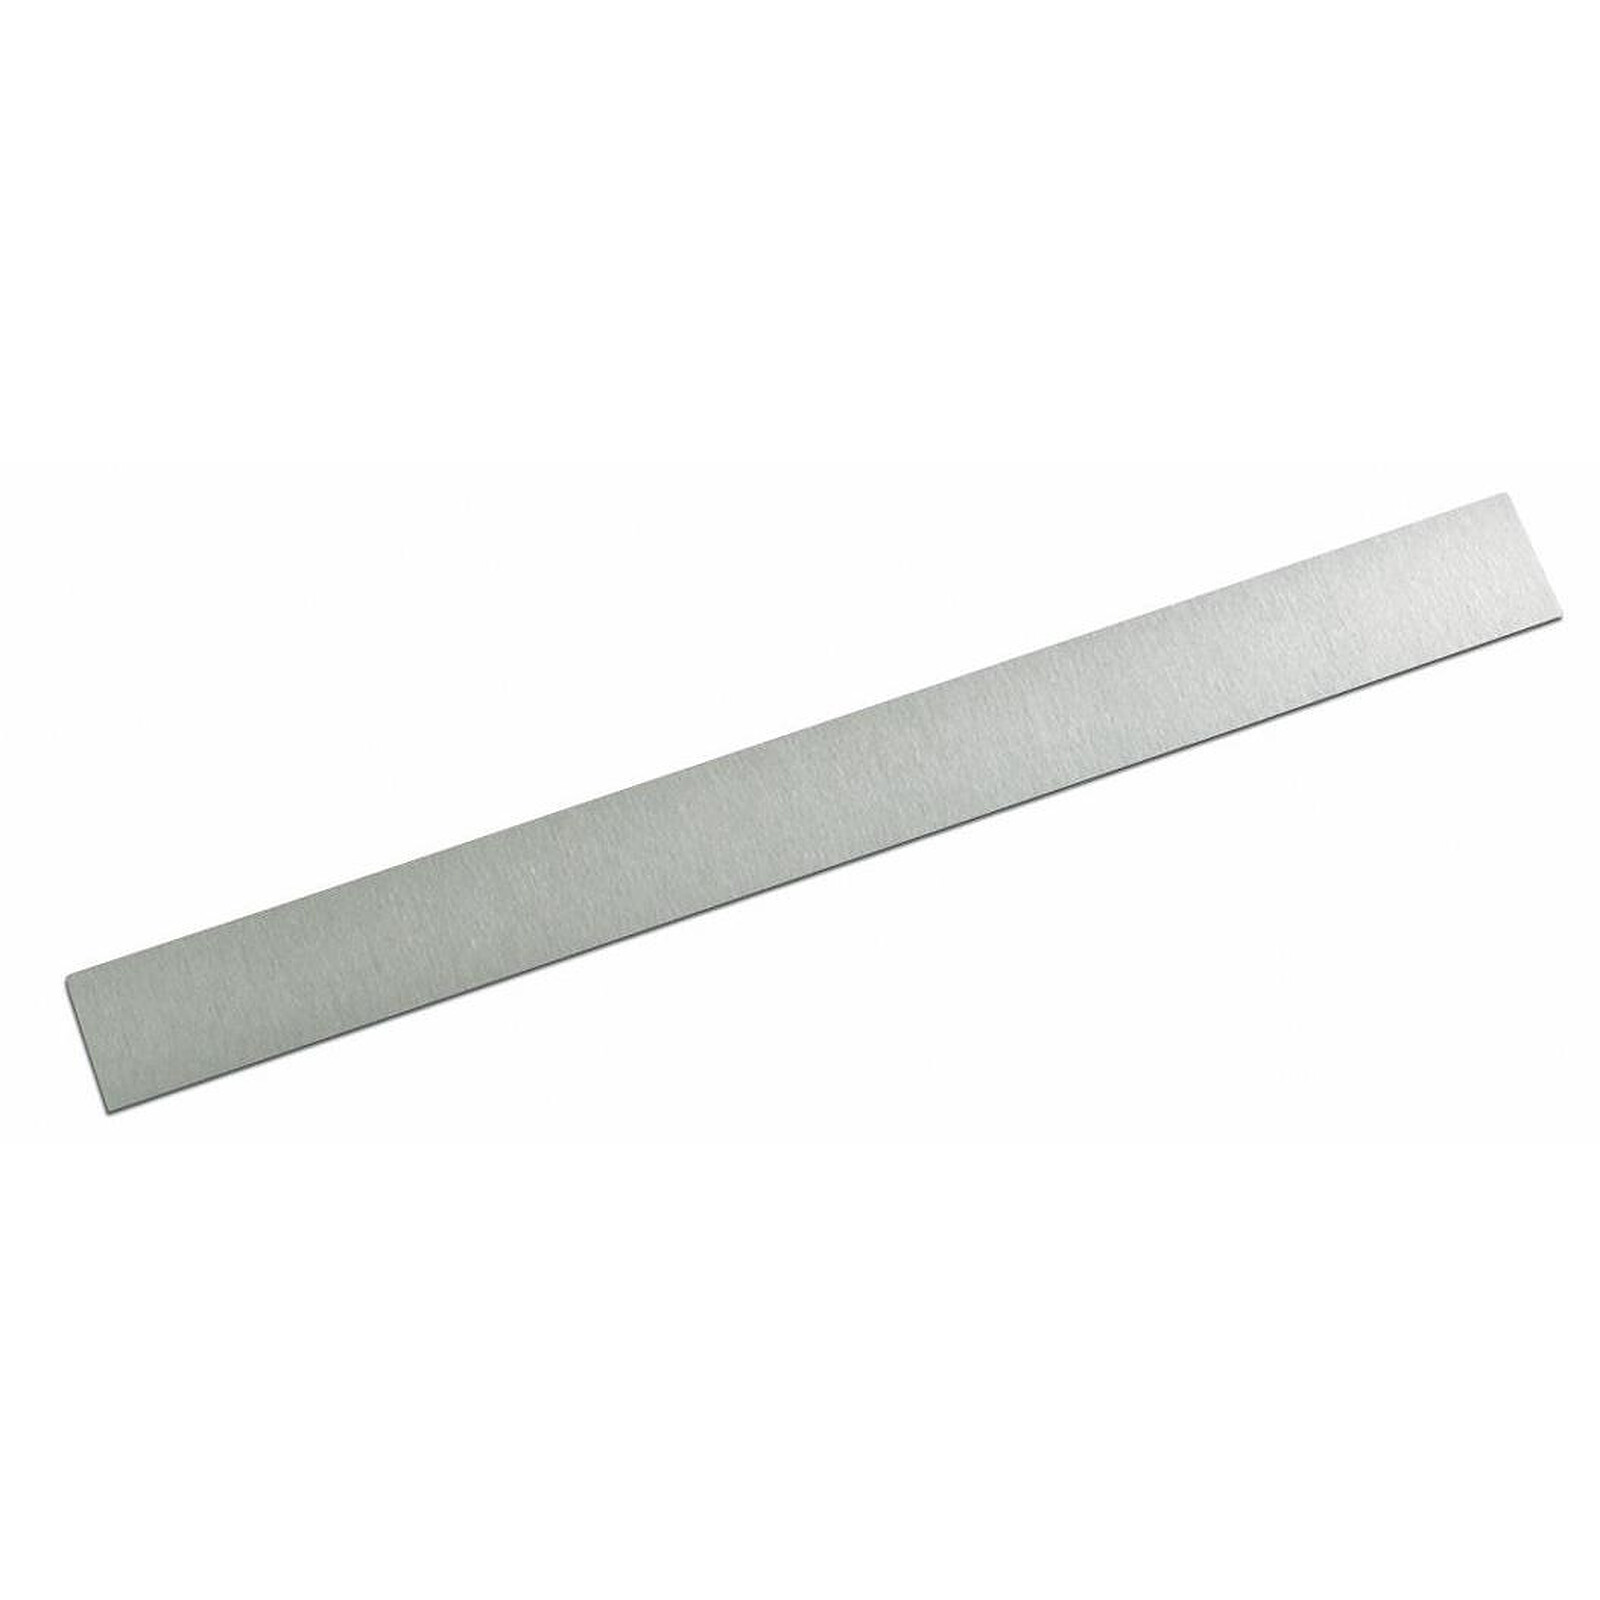 Bande métallique auto-adhésive de mousse blanc 1,5mm x 35mm au métre